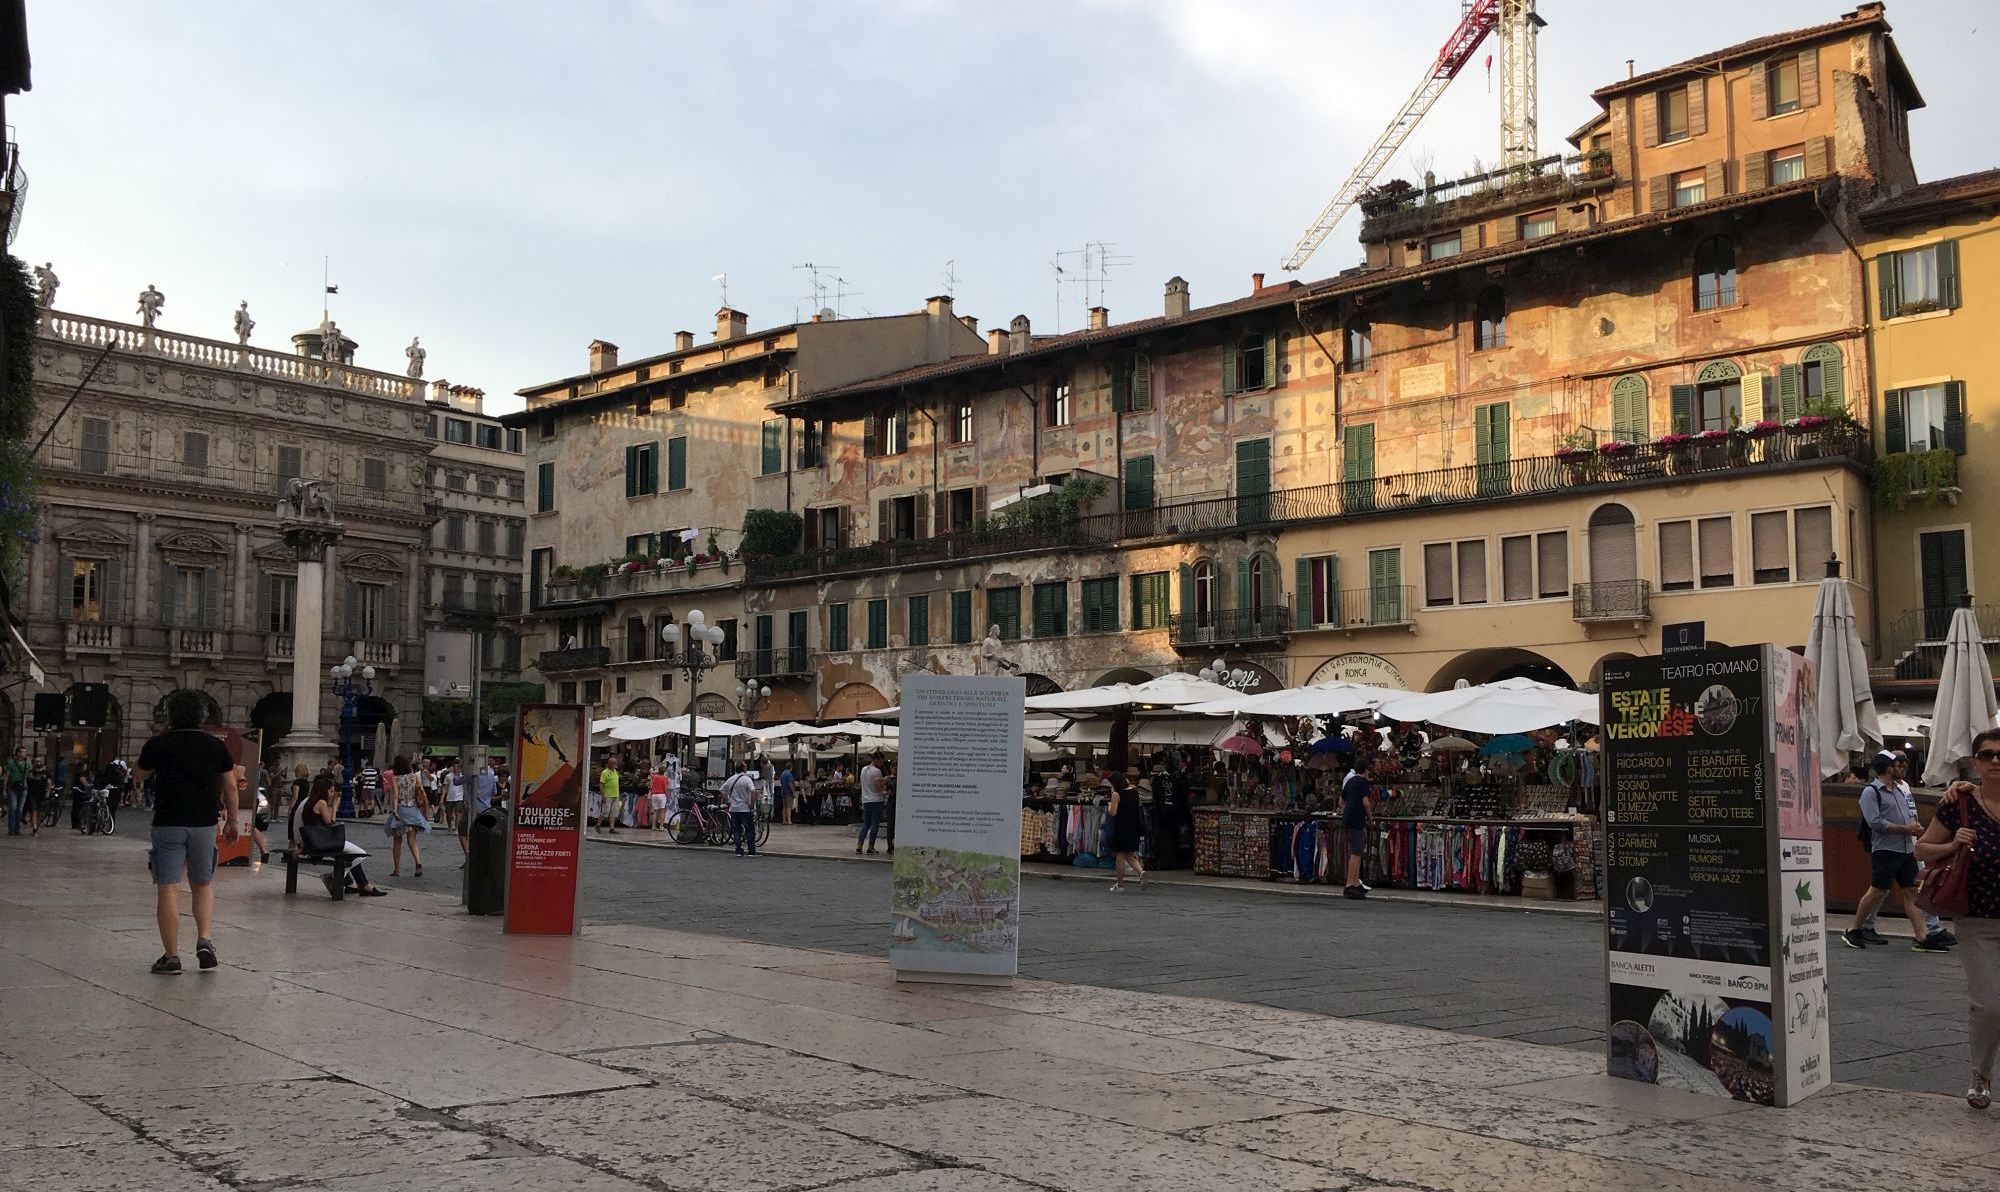 Verona Piazza Erbe (part of the square)